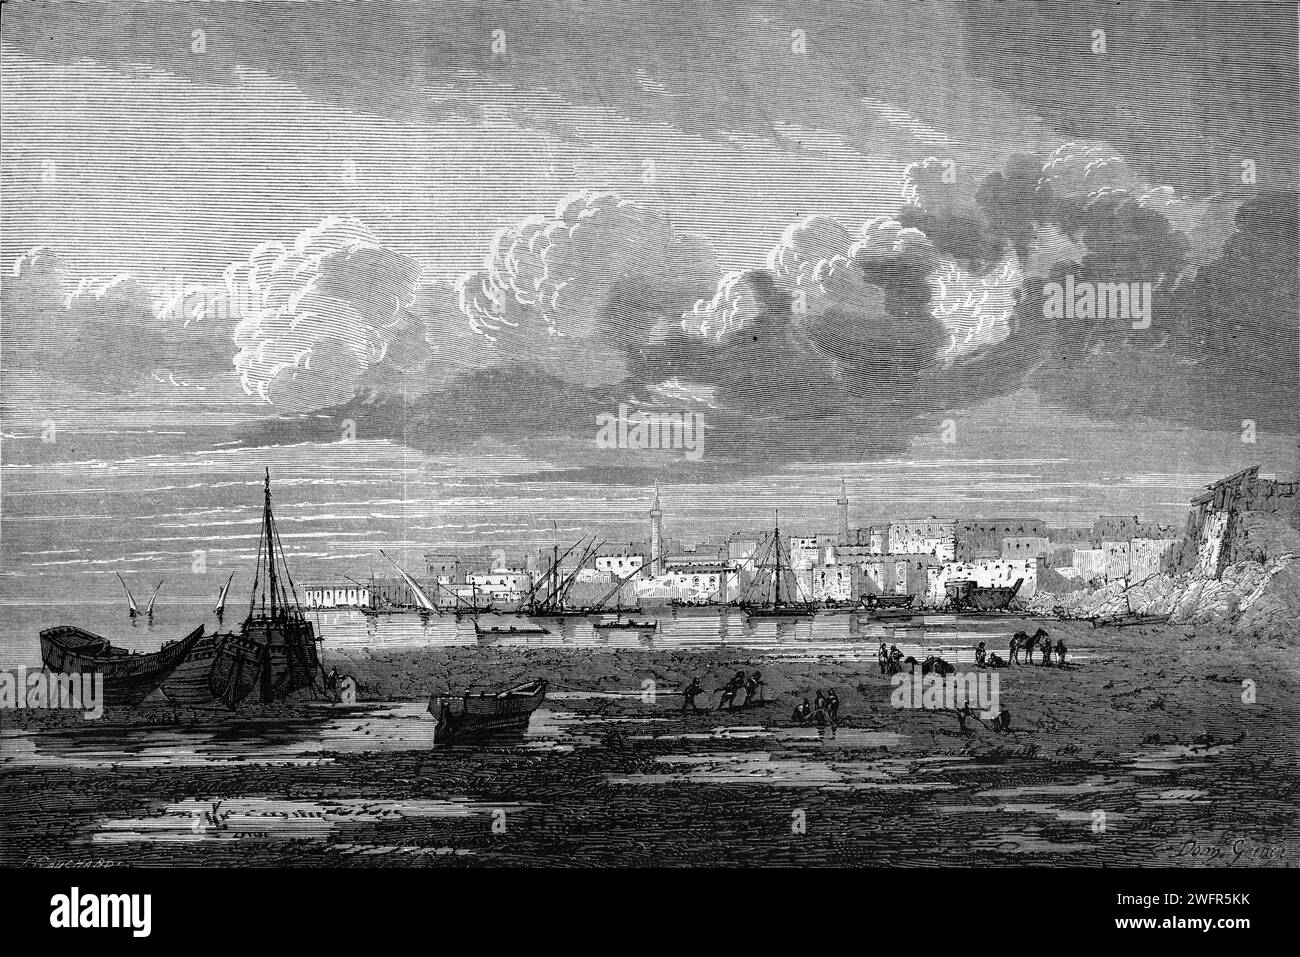 Frühe Sicht auf den Seehafen oder die Hafenstadt Suez am Roten Meer und den Golf von Suez, Ägypten. Vintage oder historische Gravur oder Illustration 1863 Stockfoto